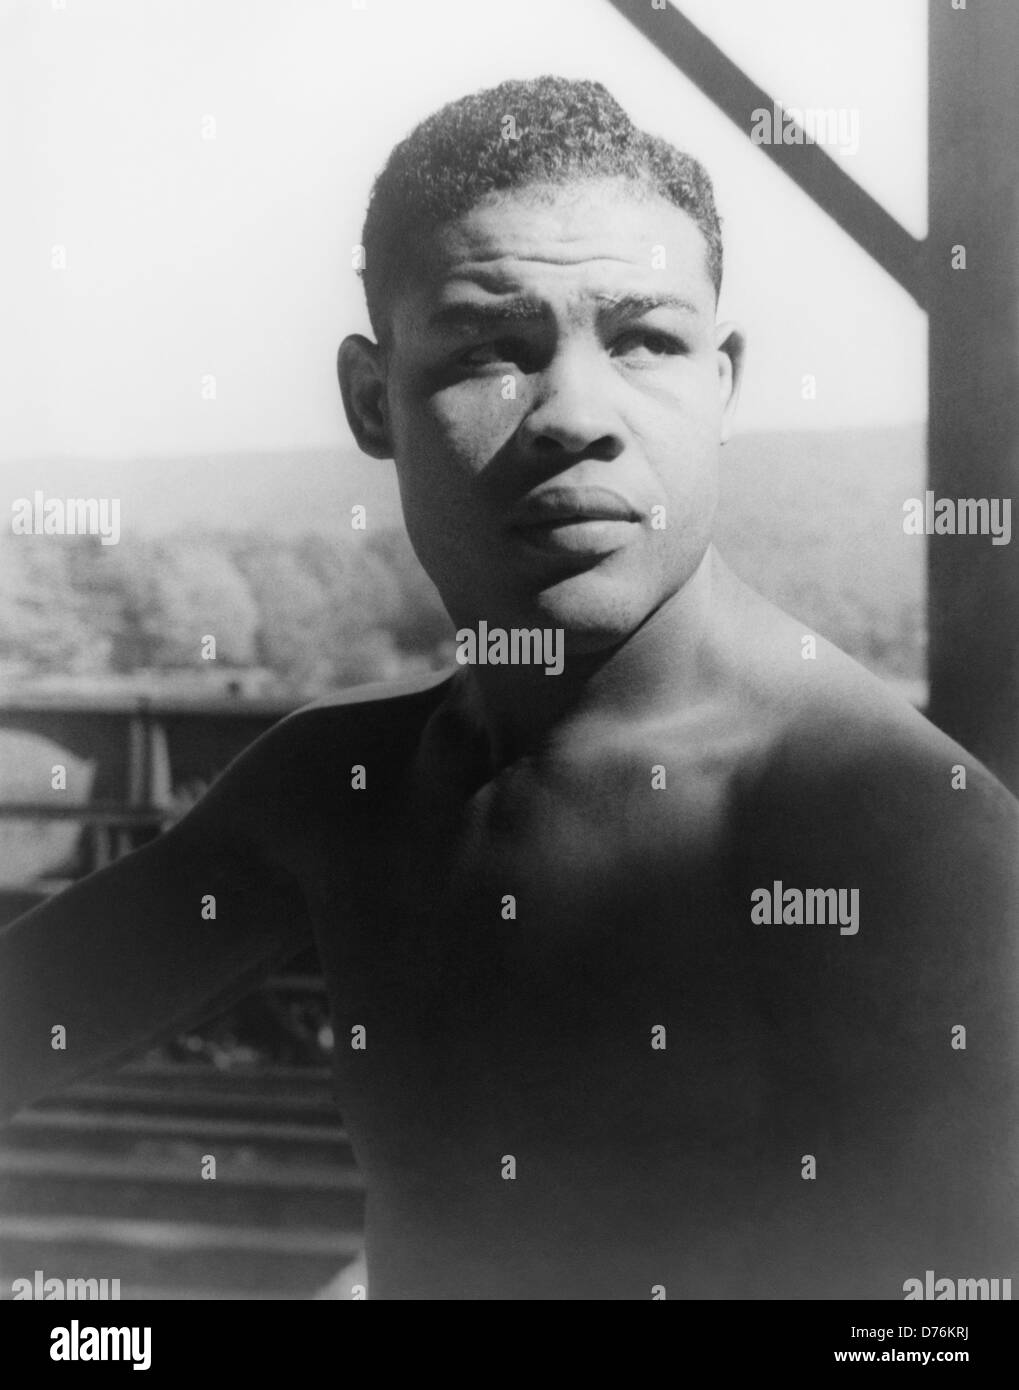 Oldtimer-Foto des Boxers Joe Louis (1914 – 1981) – Louis, bekannt als „The Brown Bomber“, war von 1937 bis 1949 Weltmeister im Schwergewicht. Foto von Carl Van Vechten aufgenommen am Greenwood Lake, New York, am 15 1941. September. Stockfoto